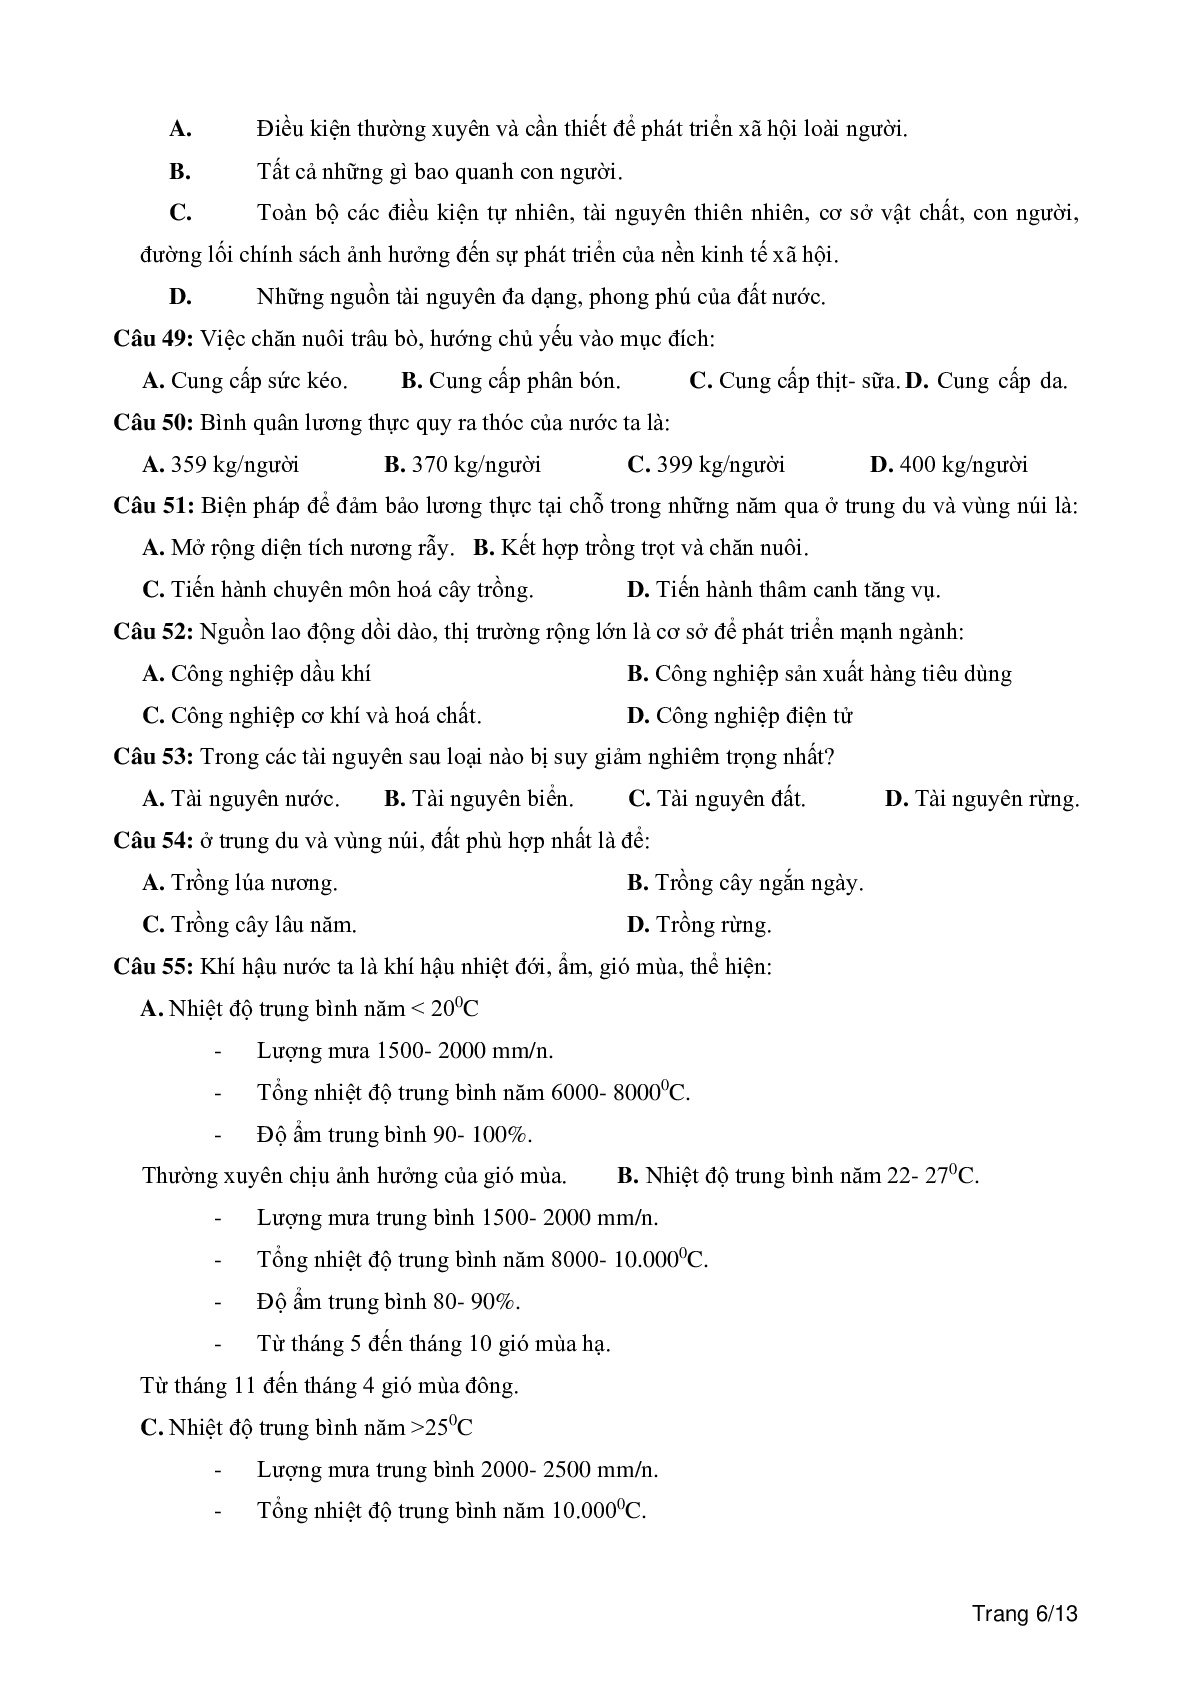 100 câu trắc nghiệm khách quan môn Địa lí lớp 12 (trang 6)